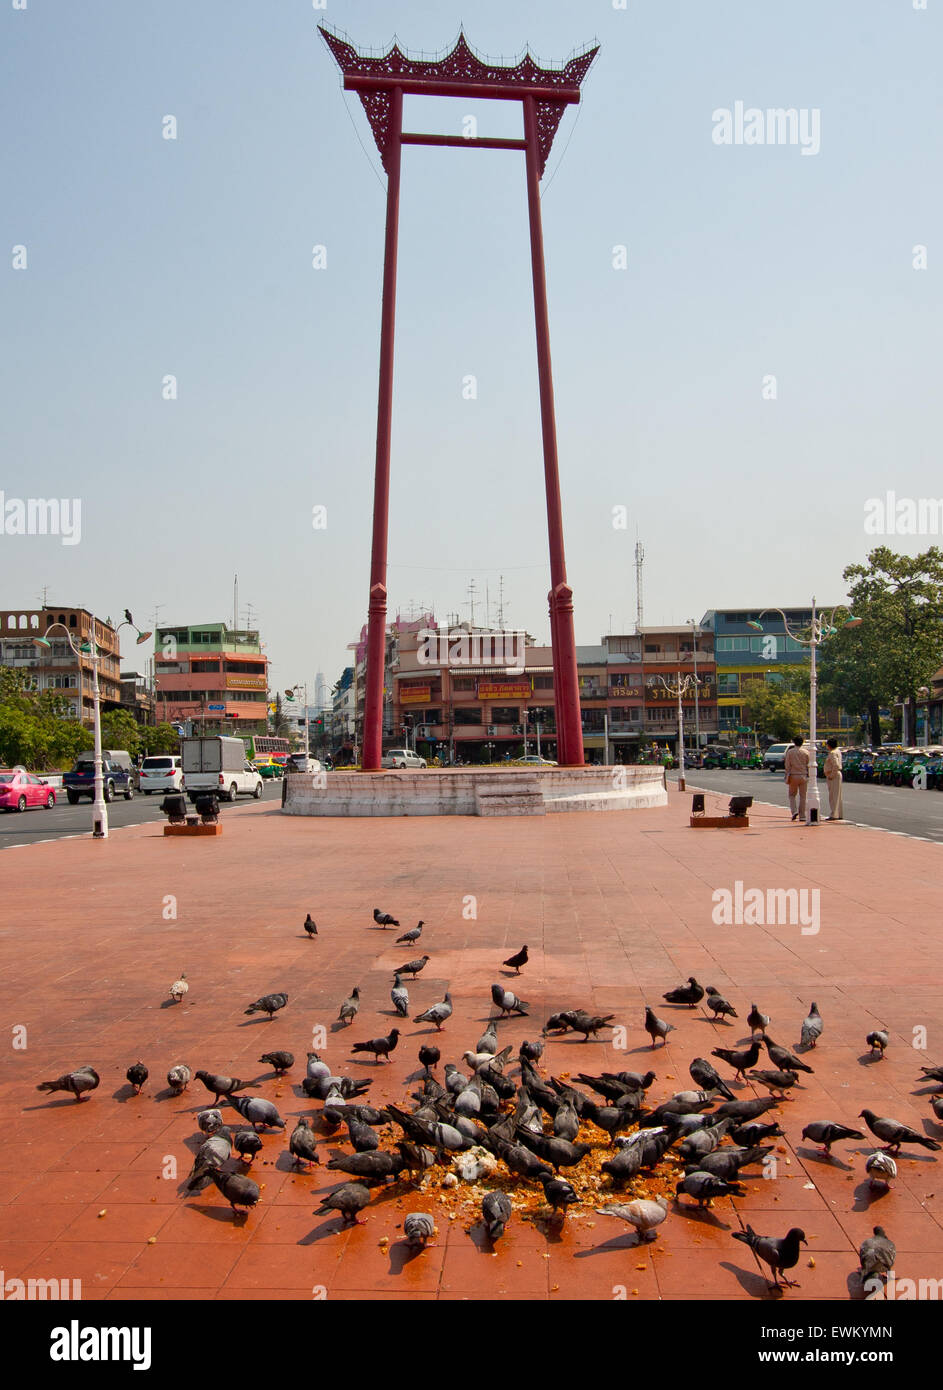 El columpio grande y palomas en un día soleado, Bangkok, Tailandia Foto de stock